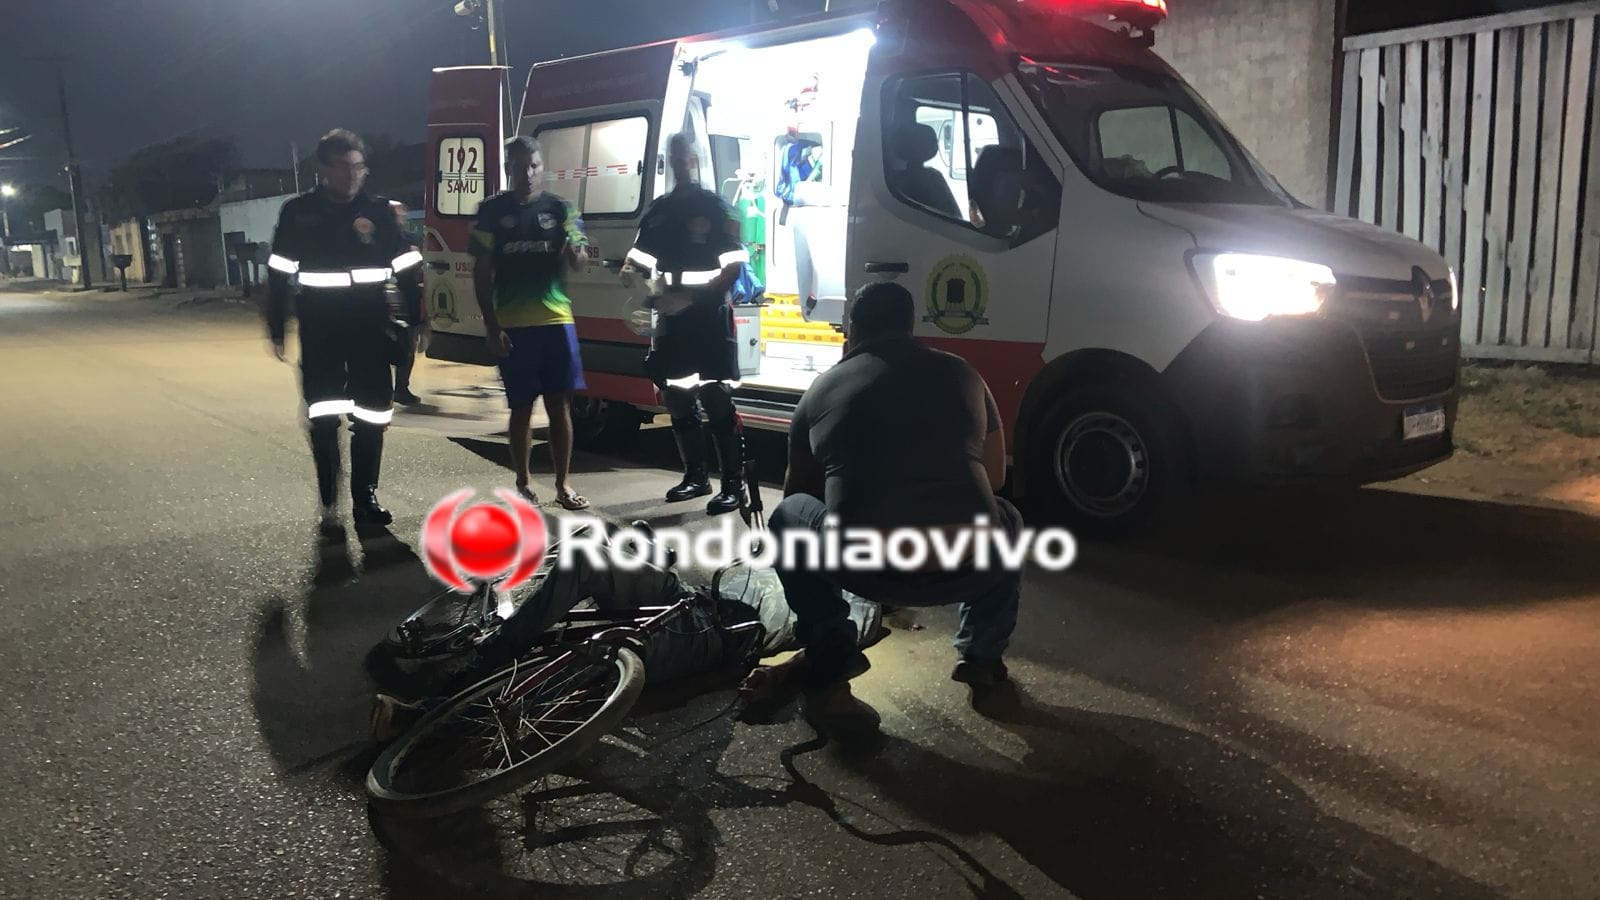 URGENTE: Motociclista foge após atropelar e deixar ciclista gravemente ferido 